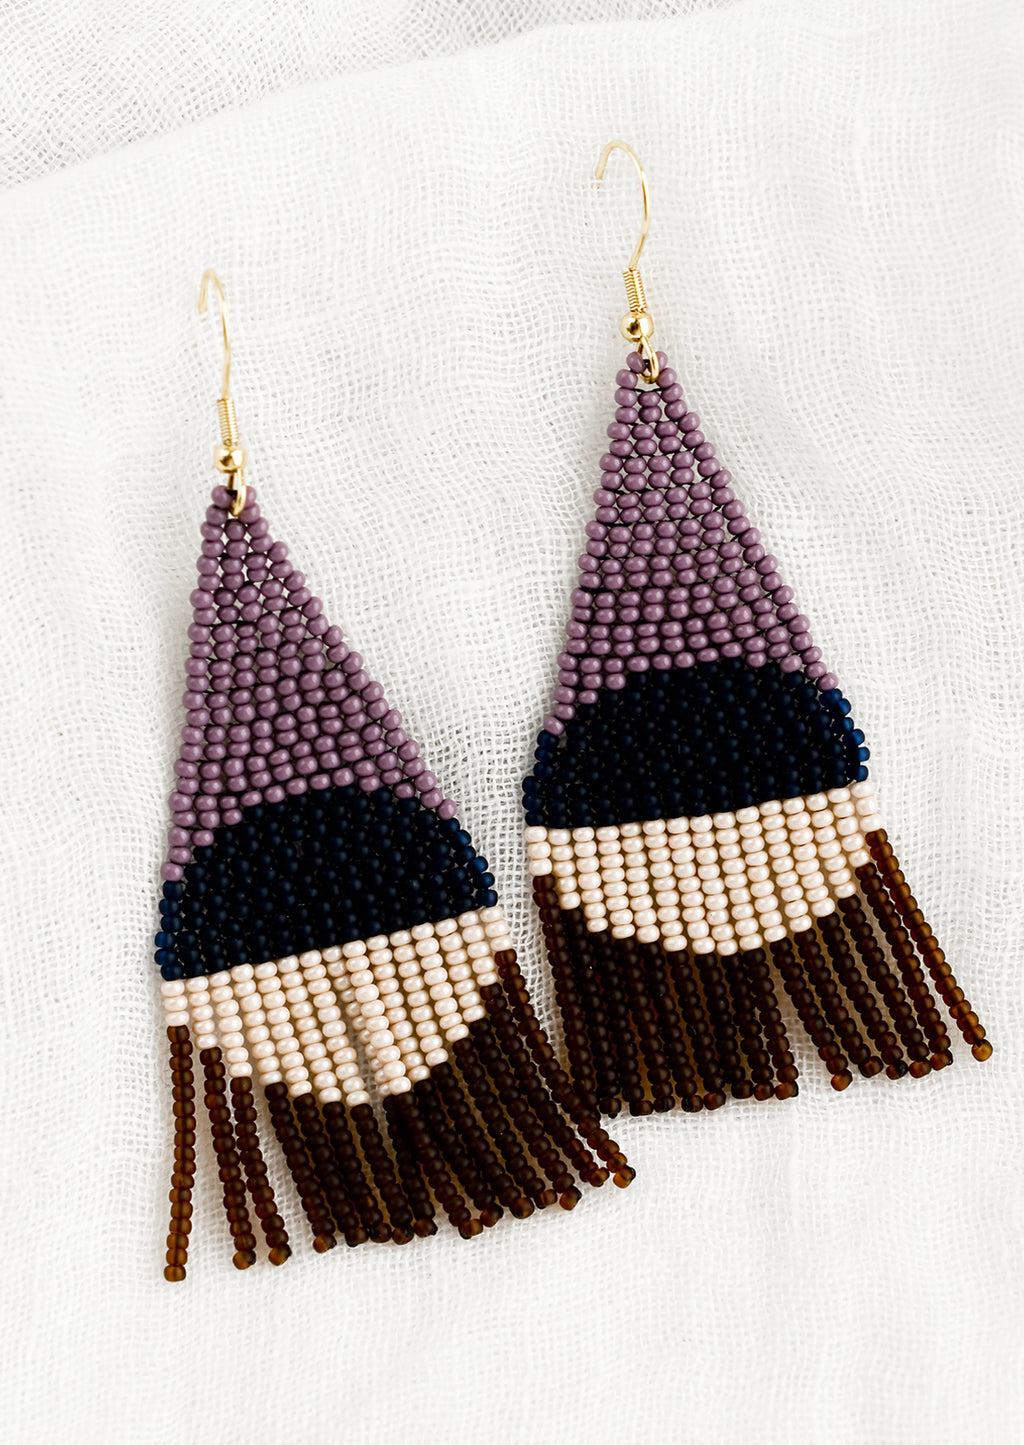 Concord Multi: A pair of geometric beaded earrings in purple colorway.